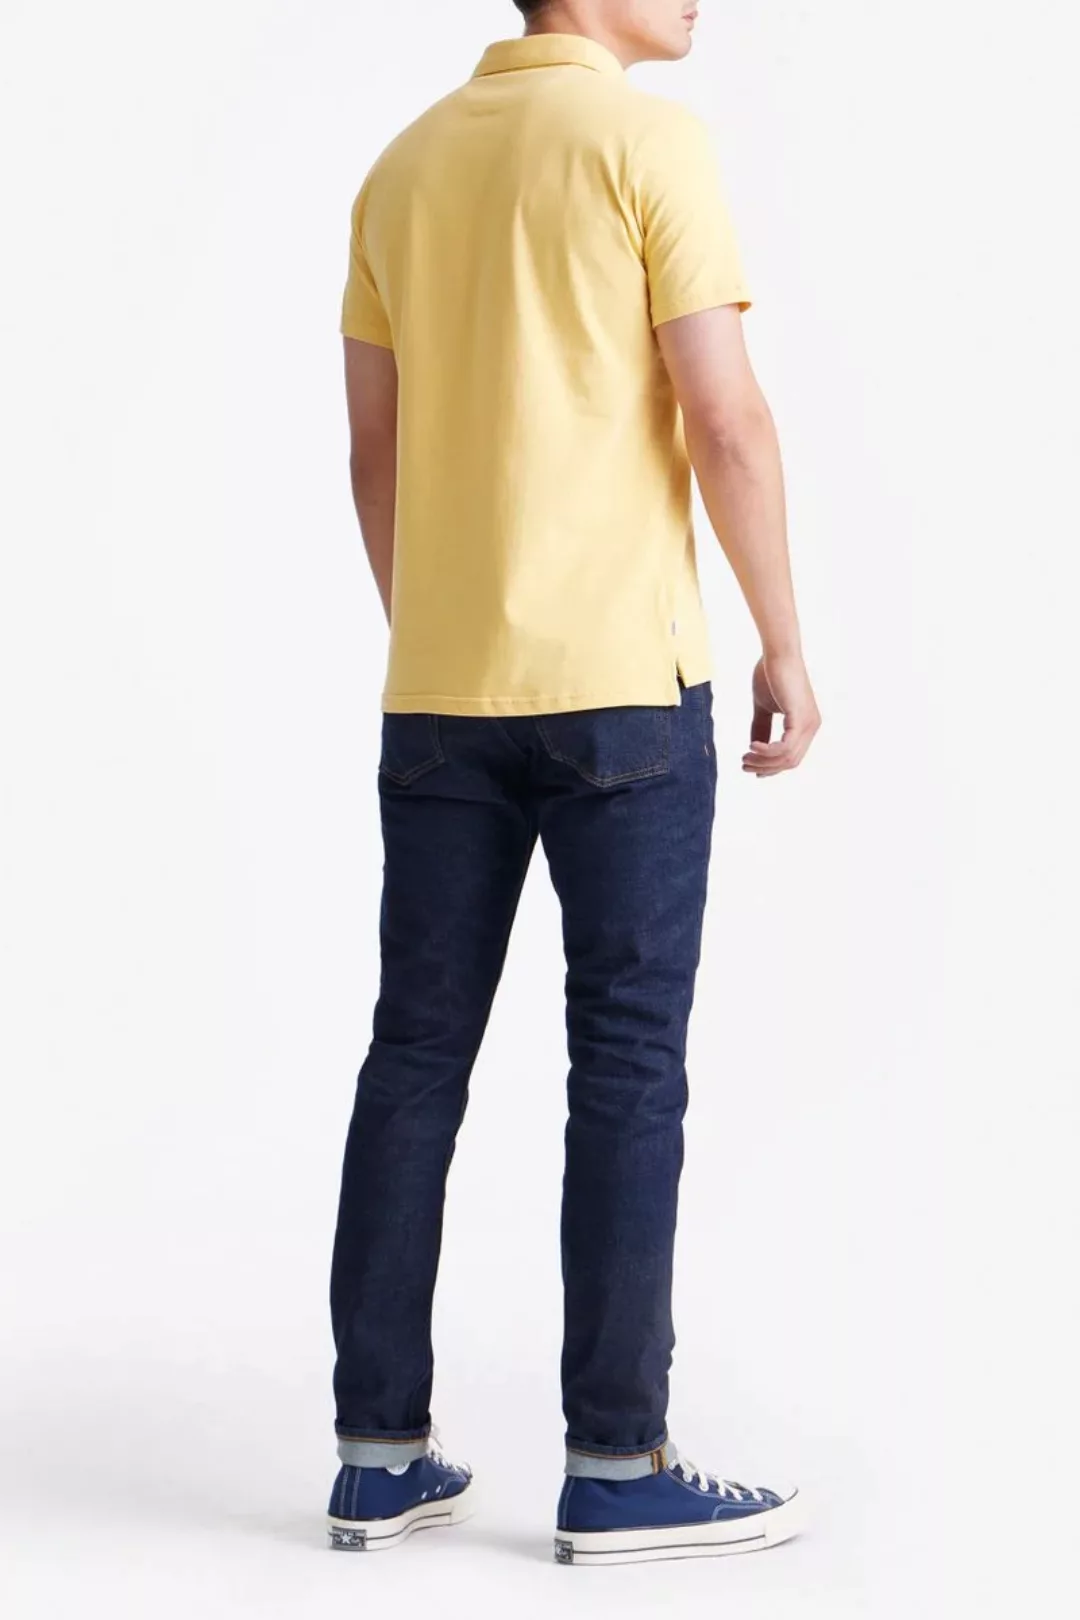 King Essentials The James Poloshirt Gelb - Größe L günstig online kaufen